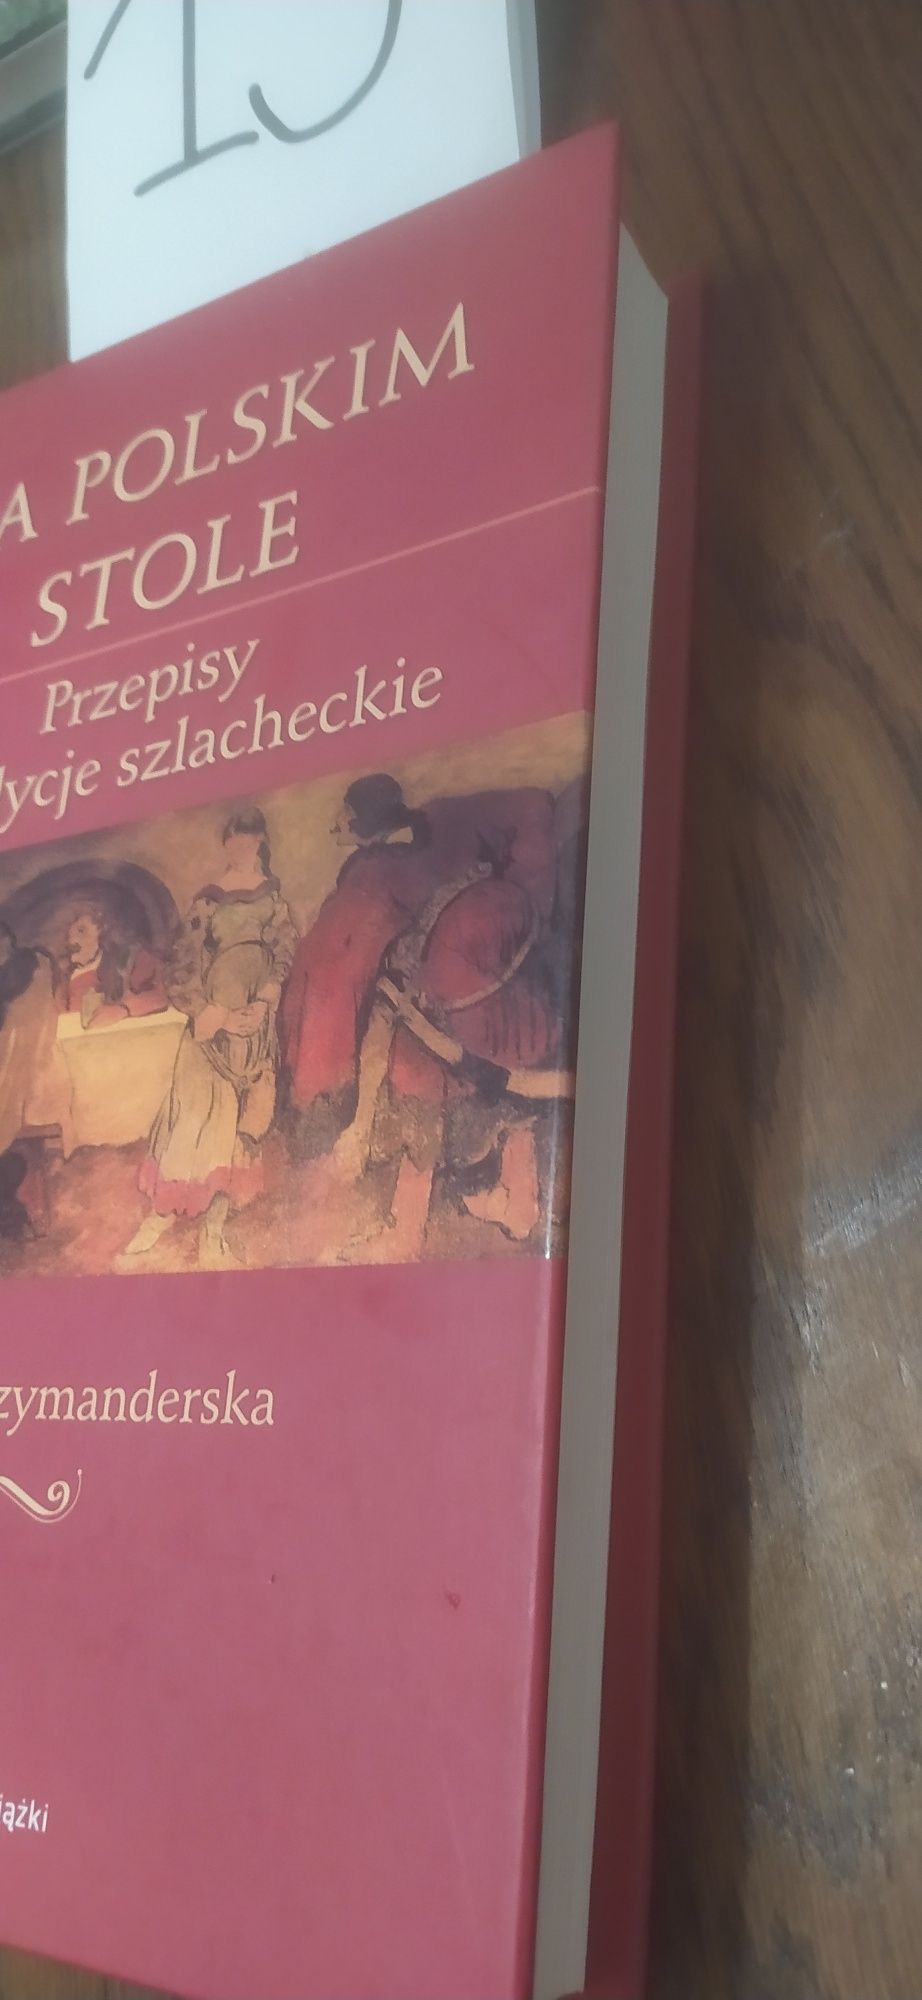 Na Polskim Stole przepisy i tradycje szlacheckie Hanna Szymanderska